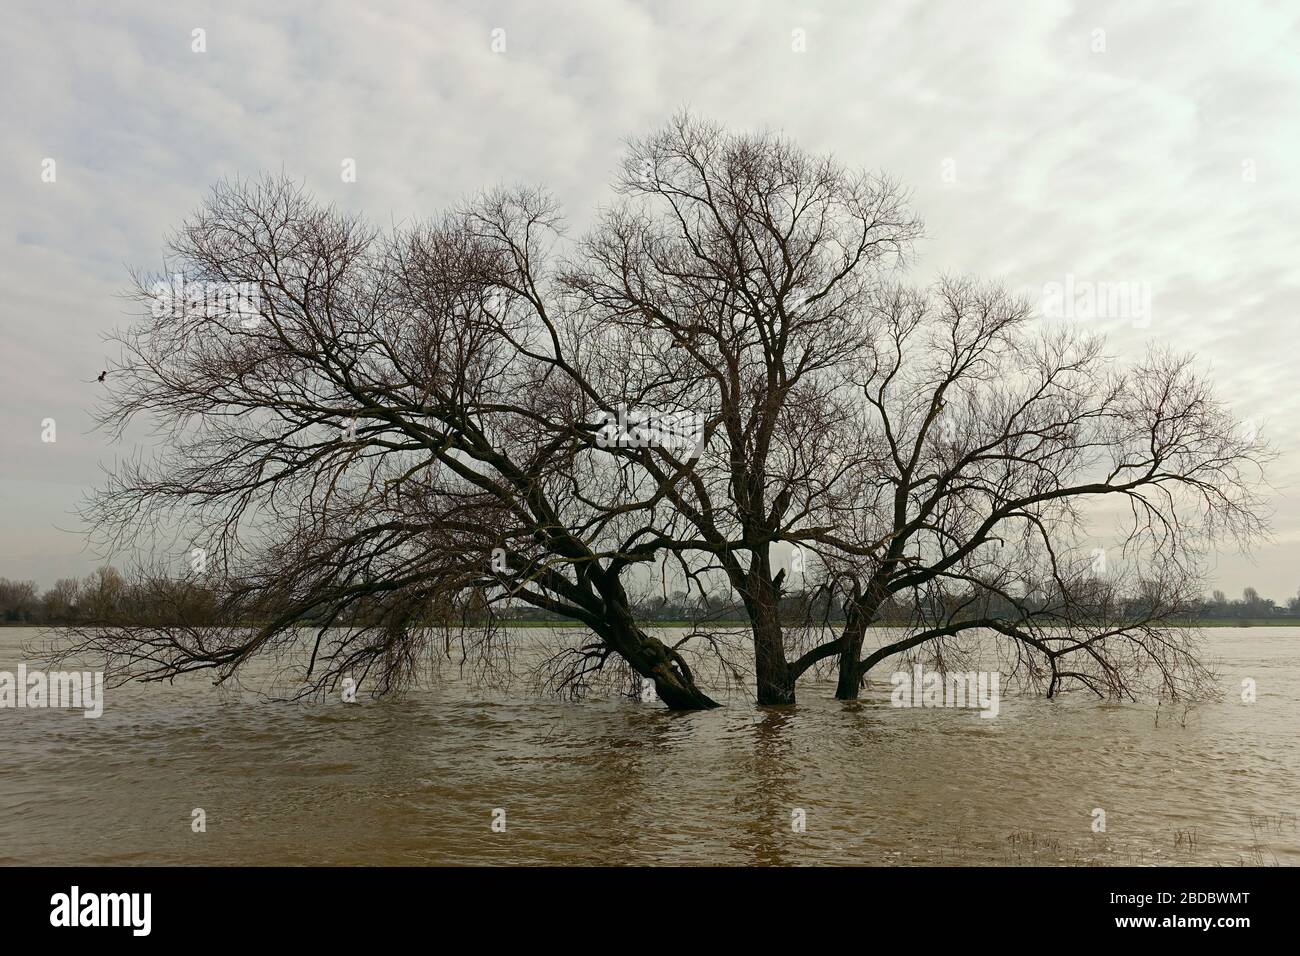 Acqua alta, alta alluvione sul fiume Reno, albero sommerso circondato da alluvione, zona del basso Reno vicino a Colonia e Düsseldorf, febbraio 2020. Foto Stock